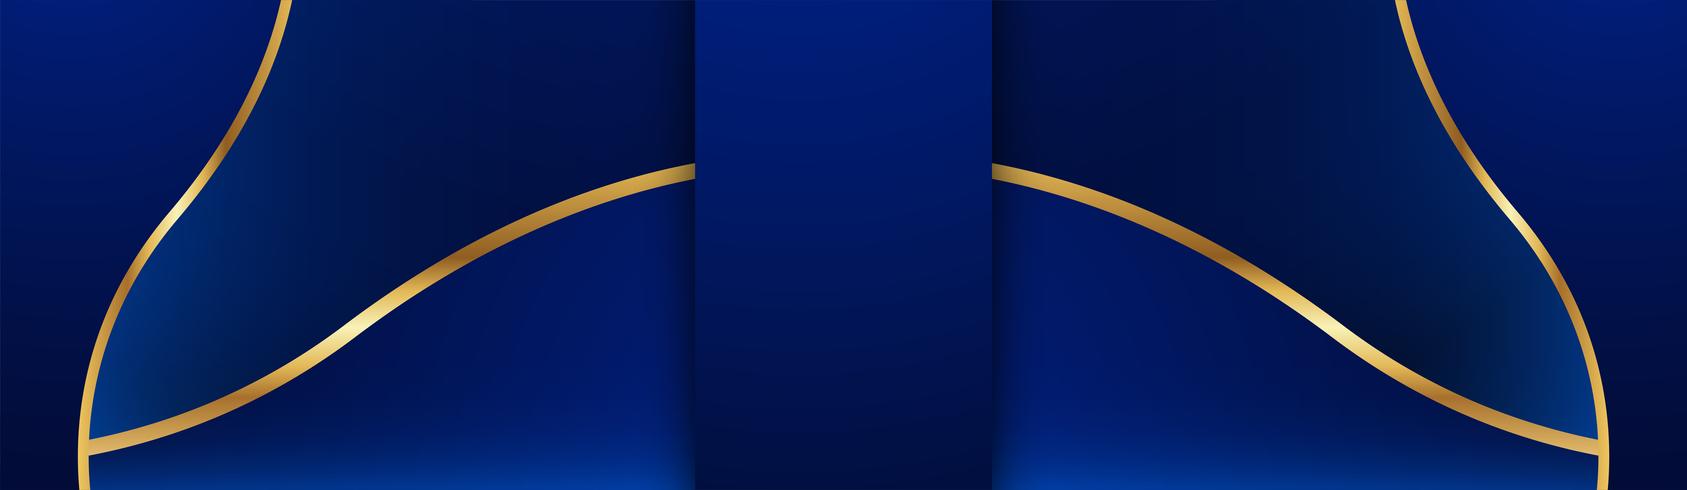 Abstrakt blå bakgrund i premium indisk stil. Malldesign för omslag, företagspresentation, webbbanner, bröllopsinbjudan och lyxförpackning. Vektor illustration med guldgräns.